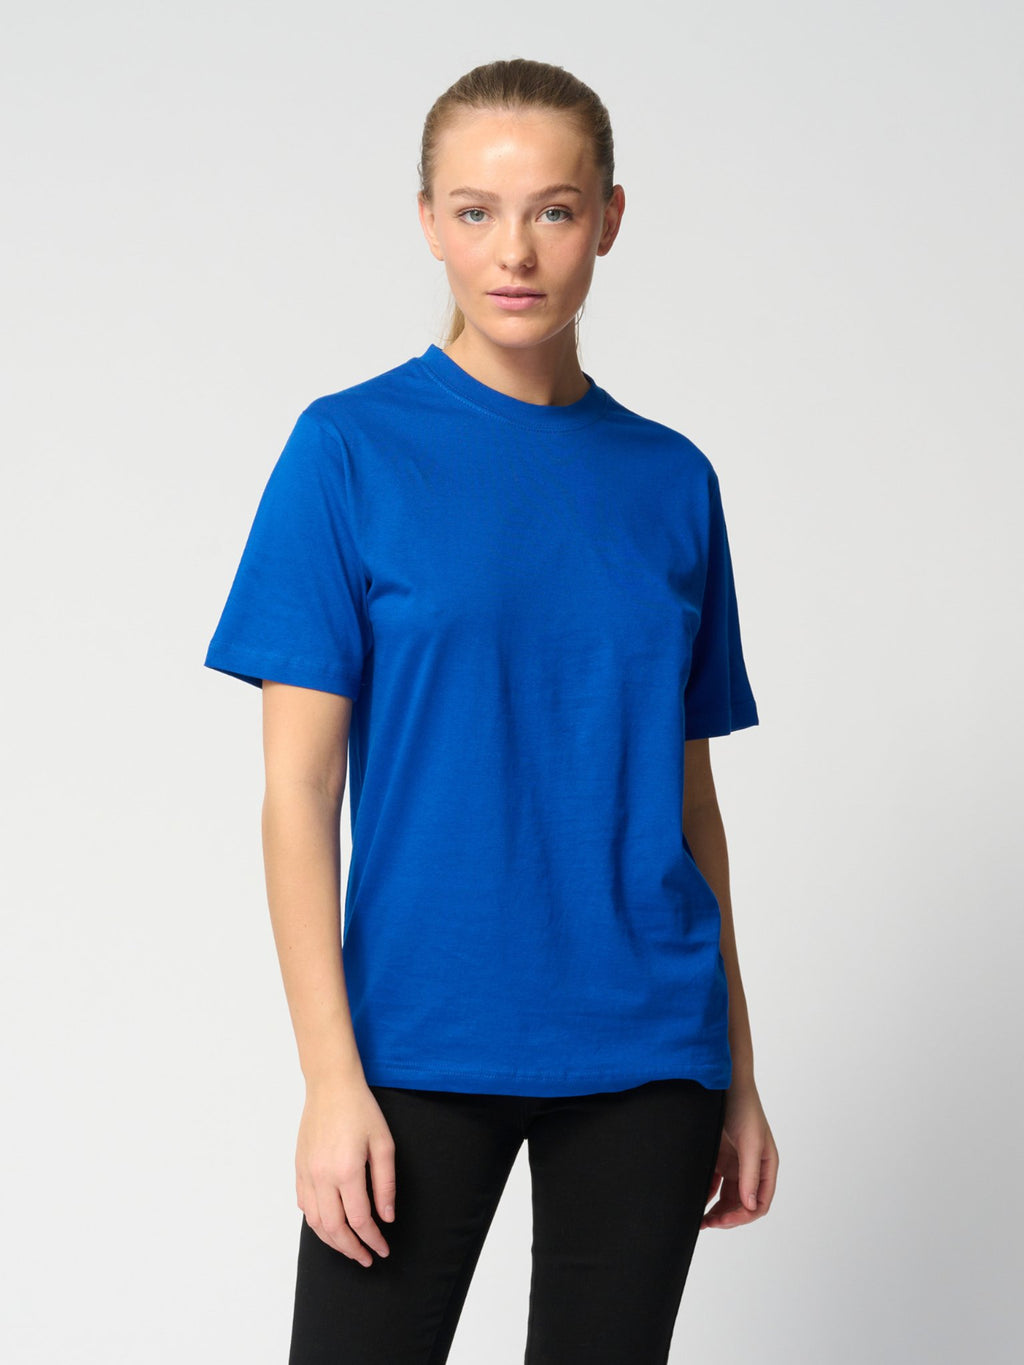 T-Shirt surdimensionné - Offre groupée pour femmes (9 pièces)